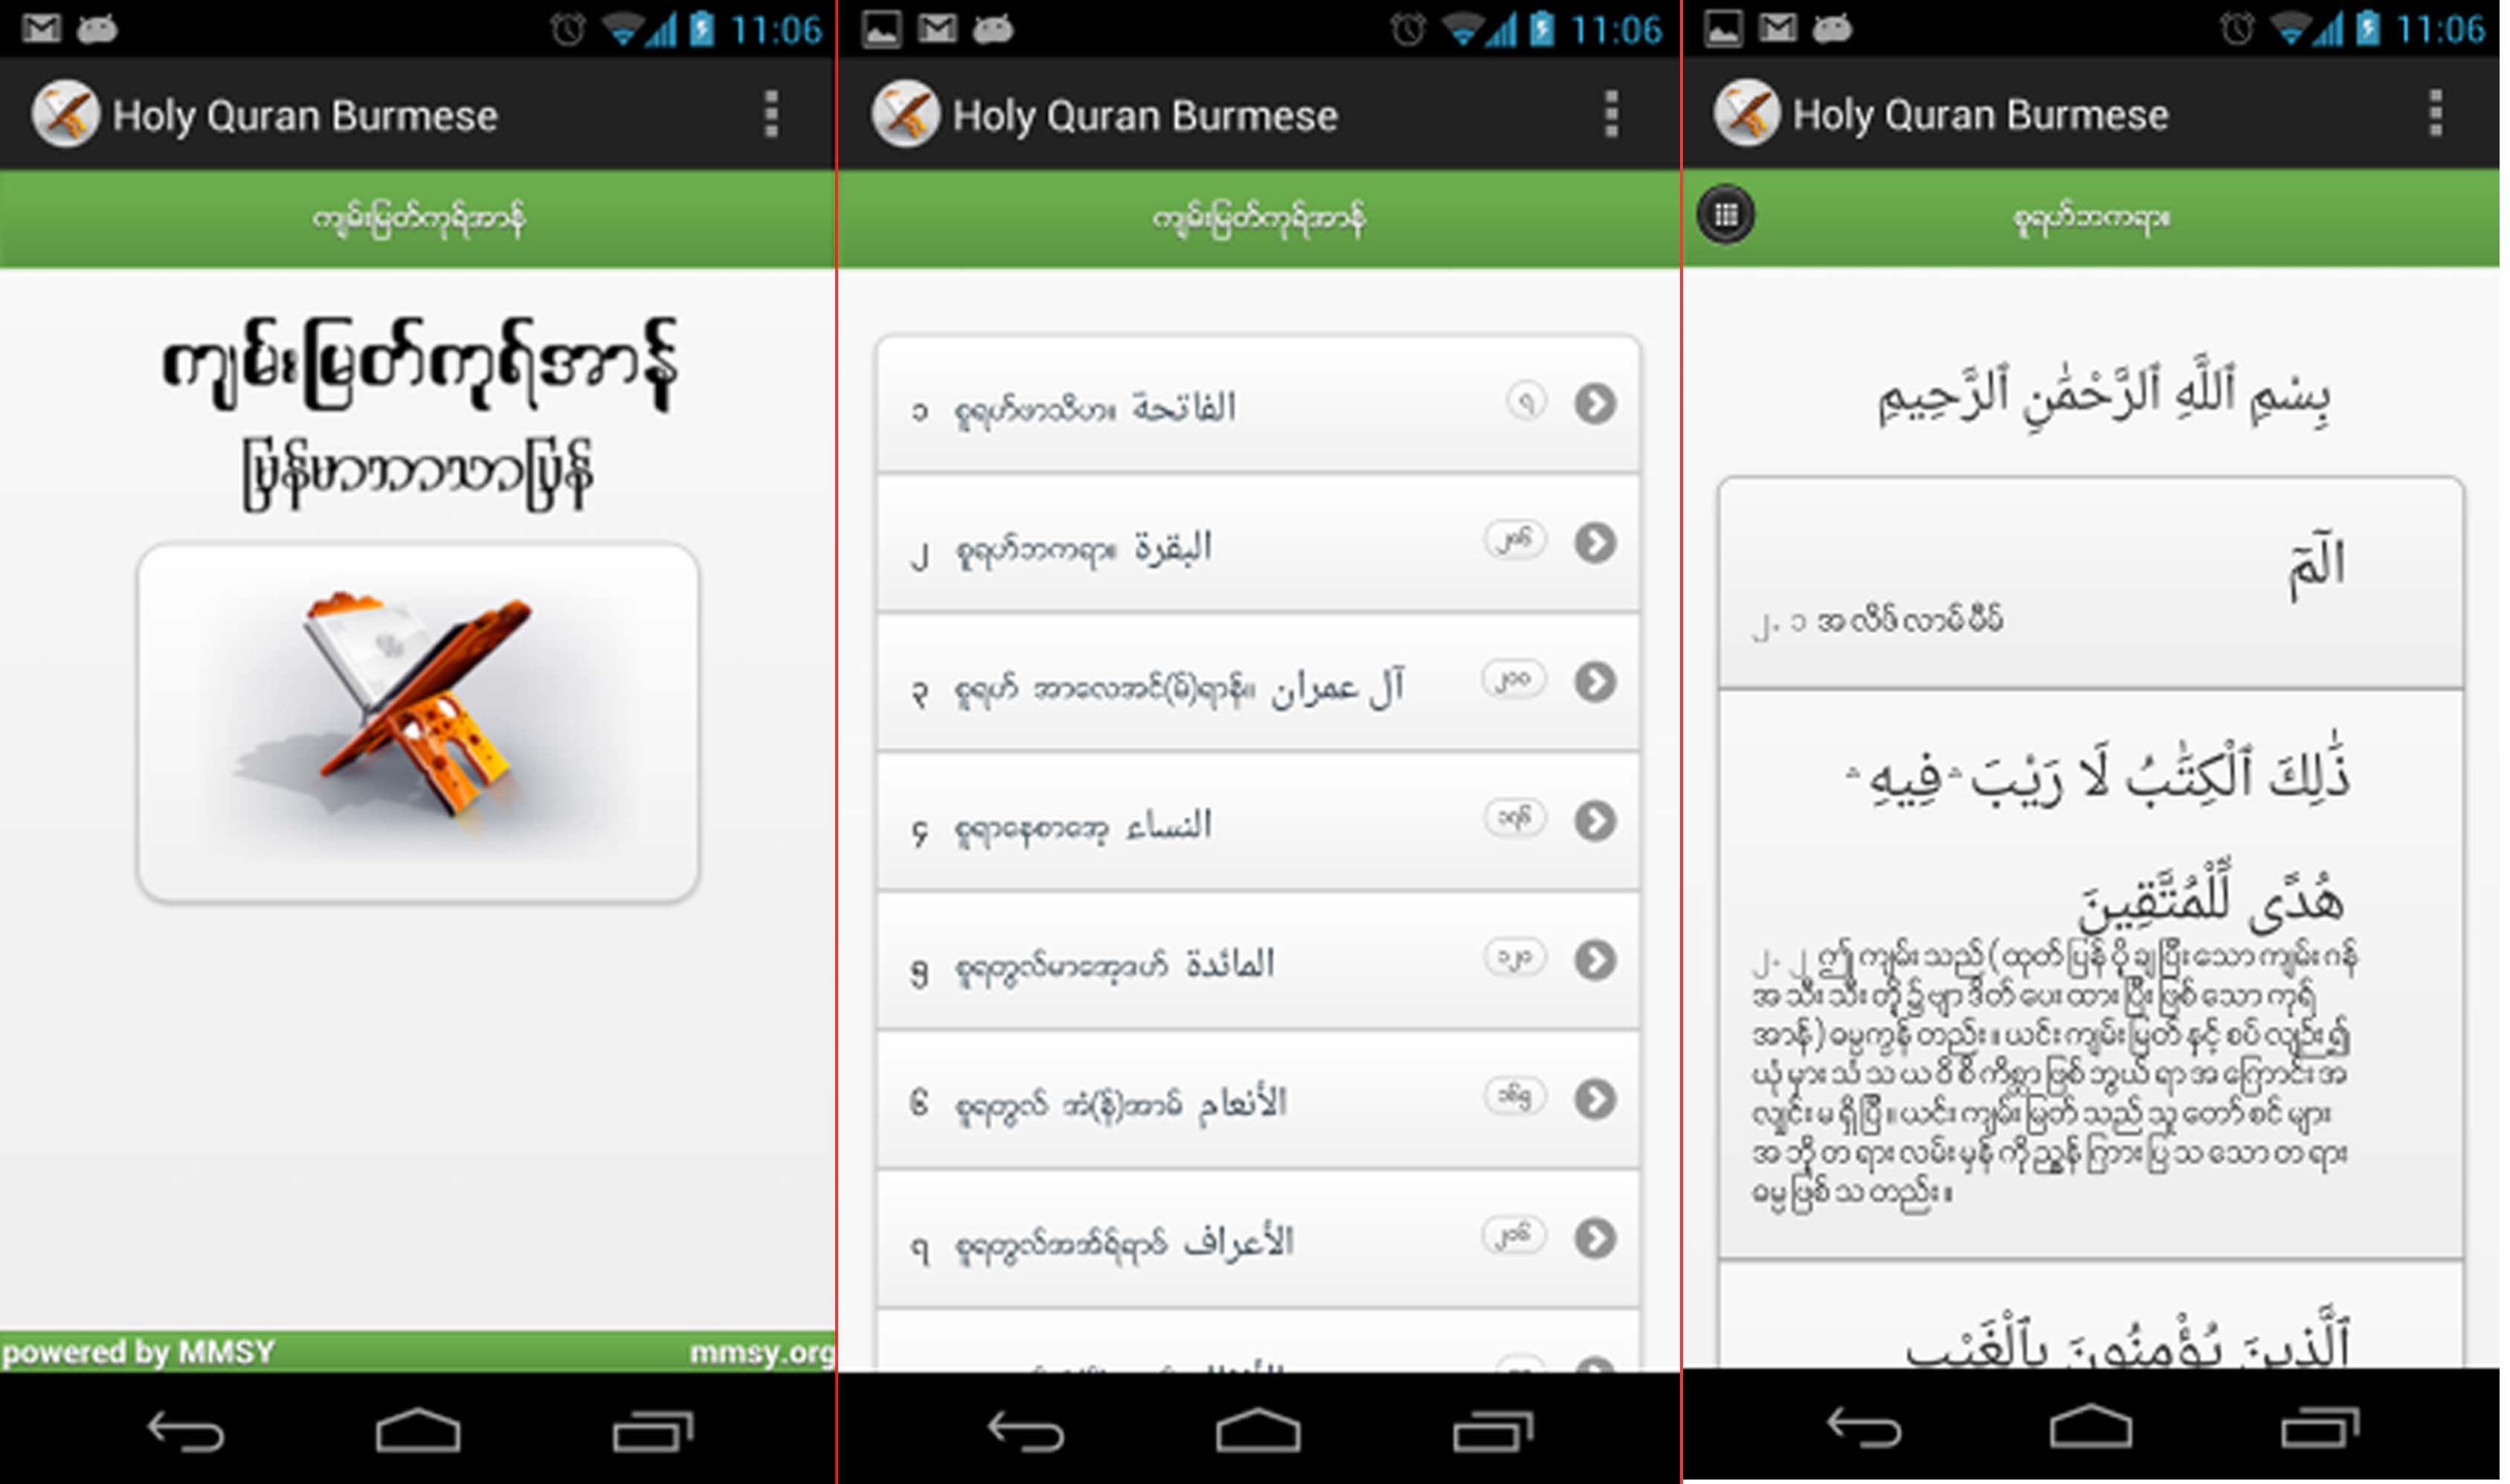 MMSY မွ က်မ္းျမတ္ ကုရ္အာန္ ျမန္မာ ဘာသာျပန္ Android Application အခမဲ့ ျဖန္႔ခ်ီ